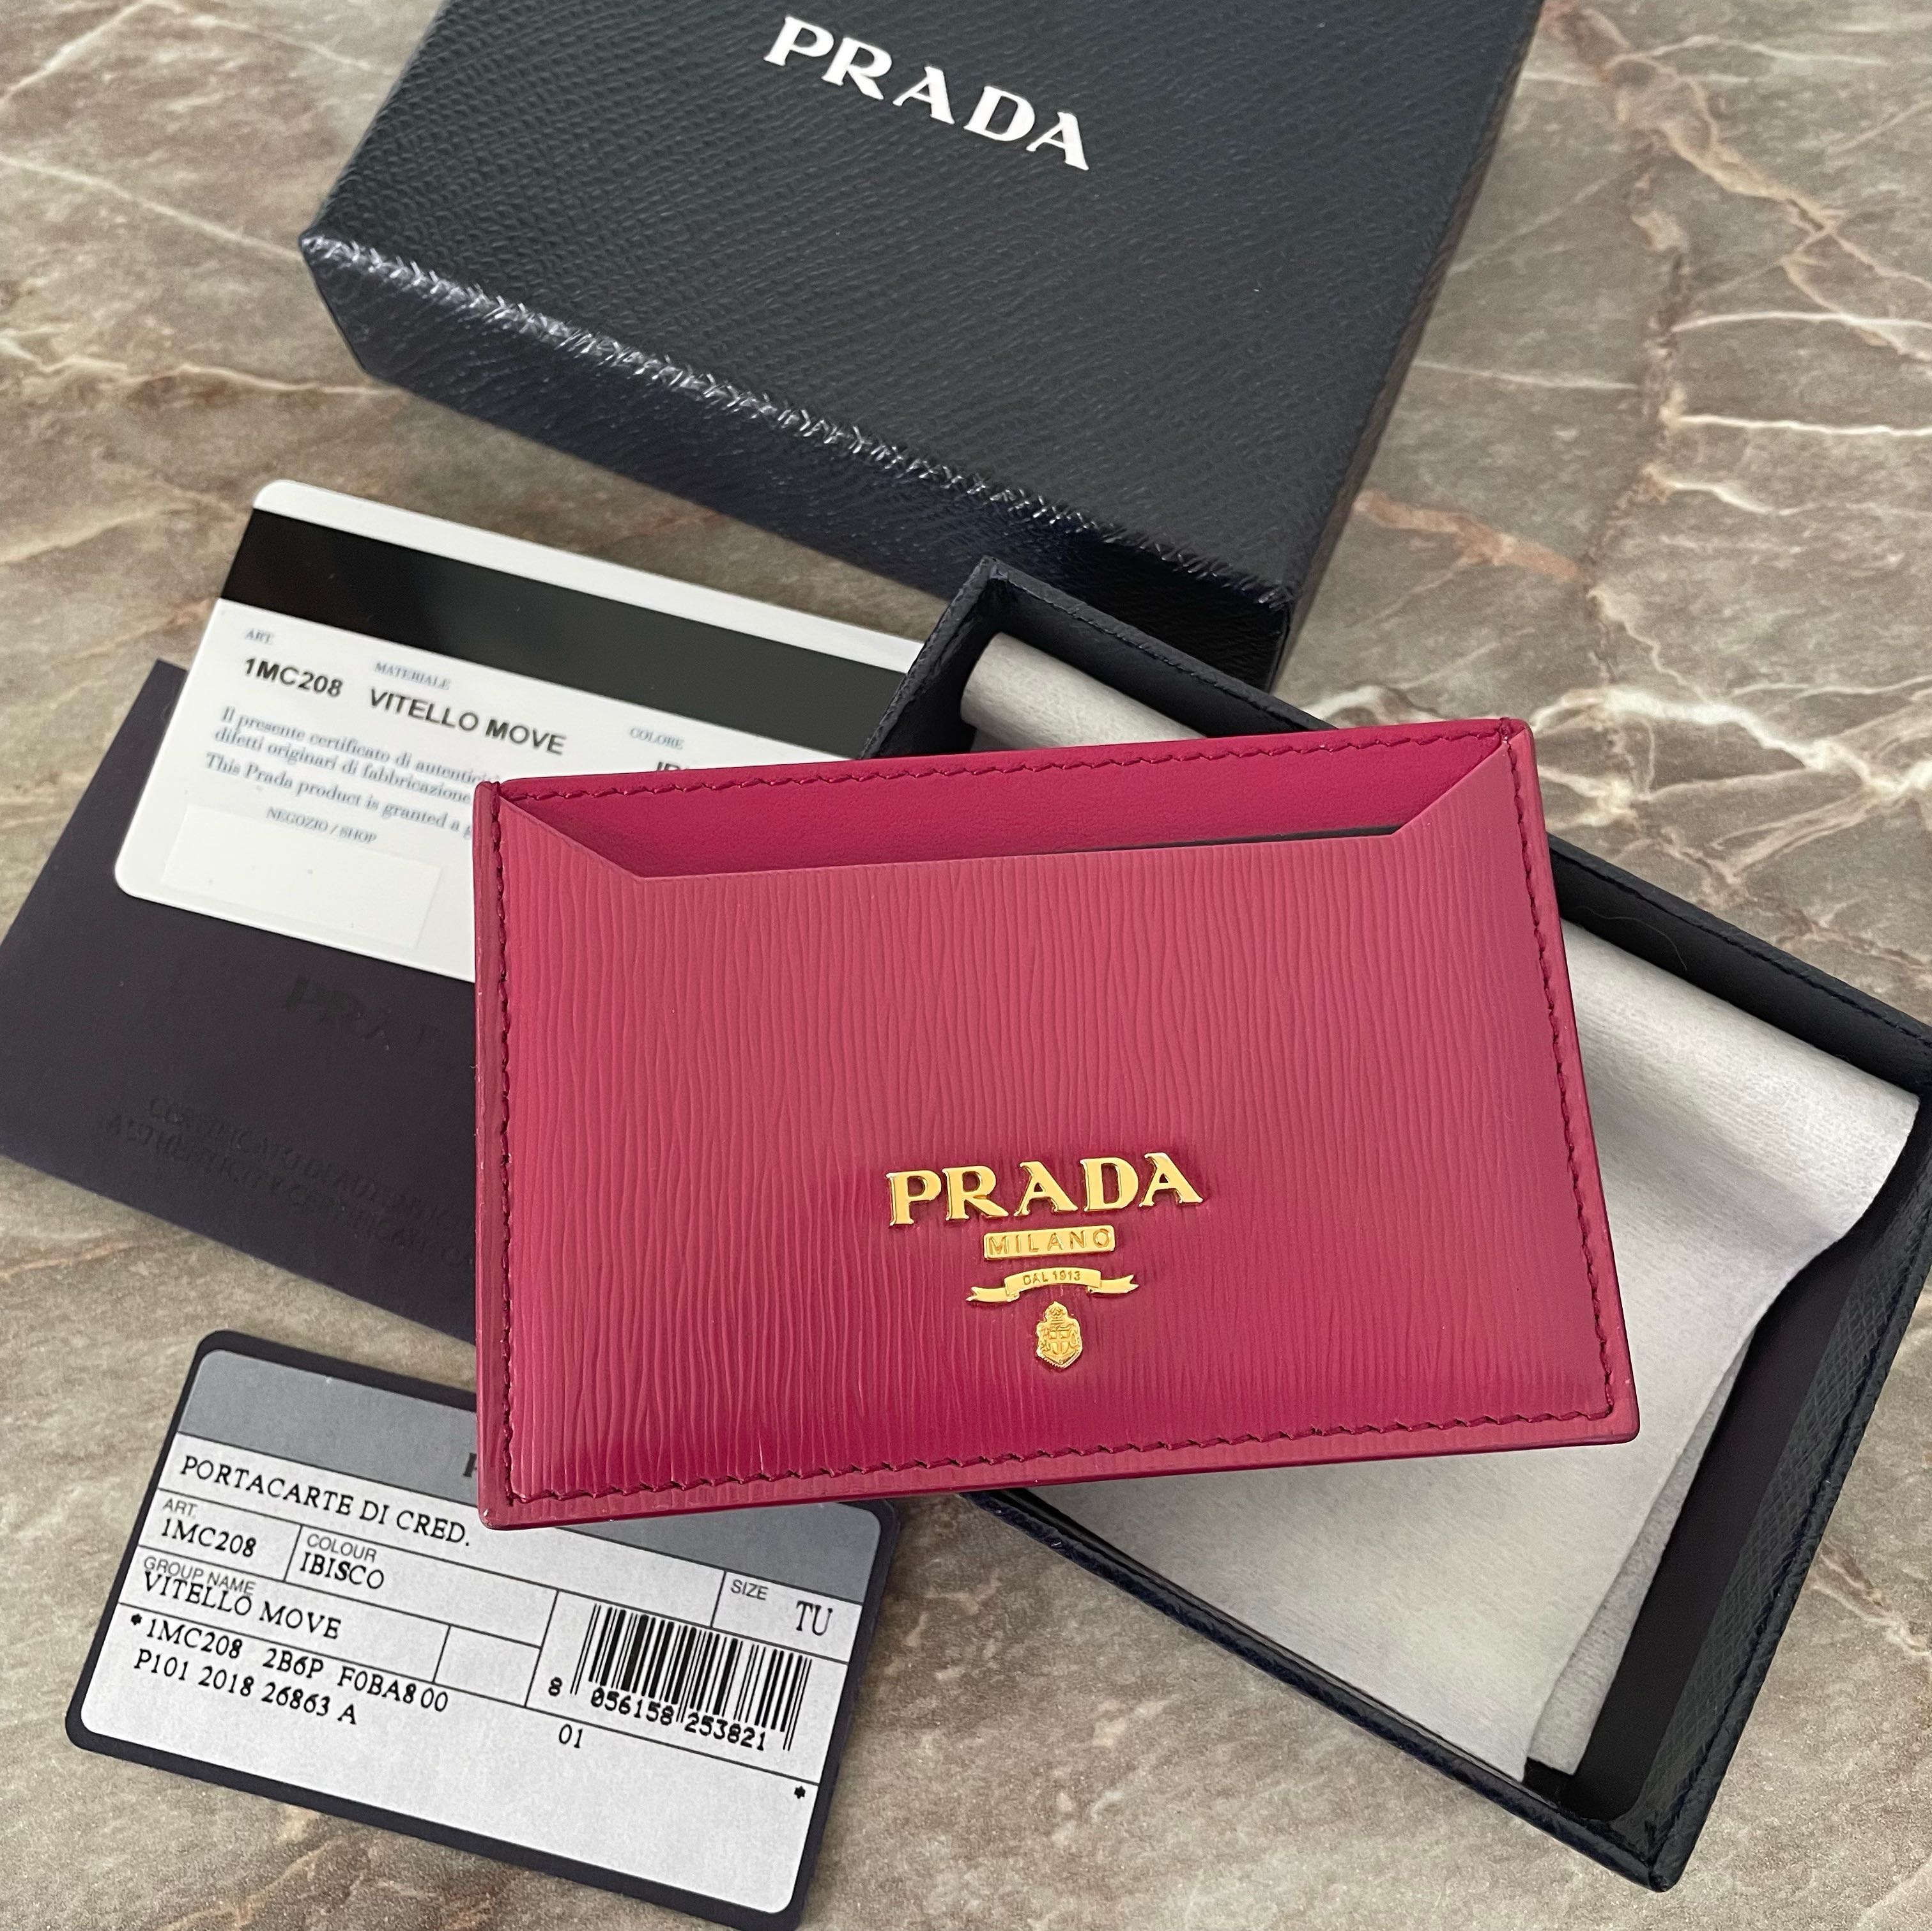 Authentic Prada Card Holder in Vitello Move Ibisco, Women's Fashion ...